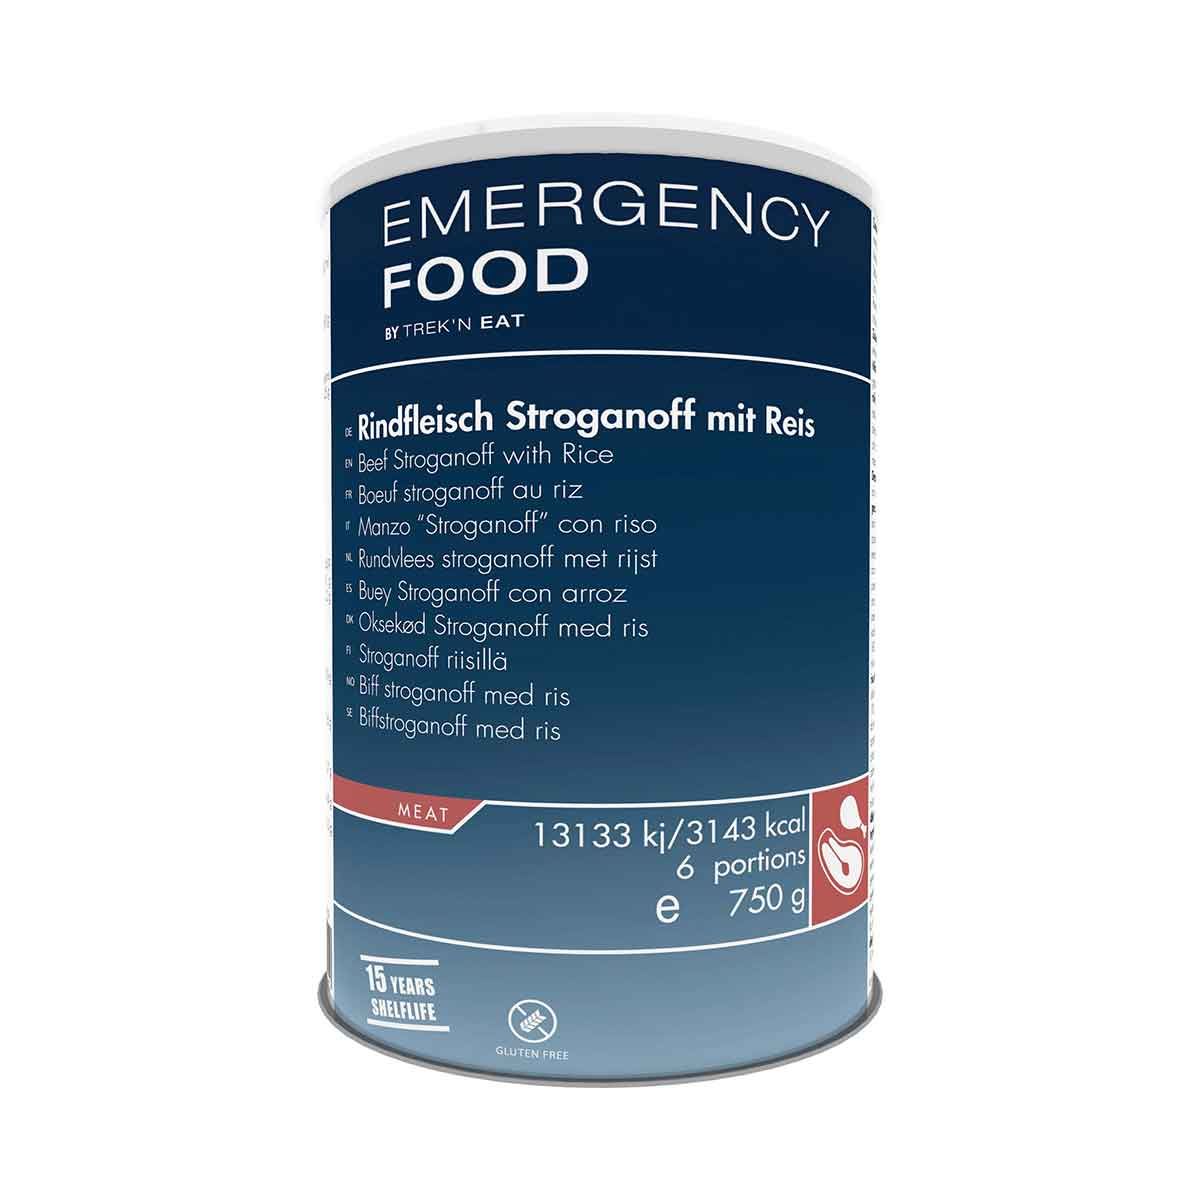 Boeuf Stroganoff au riz lyophilisé - Boîte de 1.2 Litres - DLC 15 ans - Emergency Food